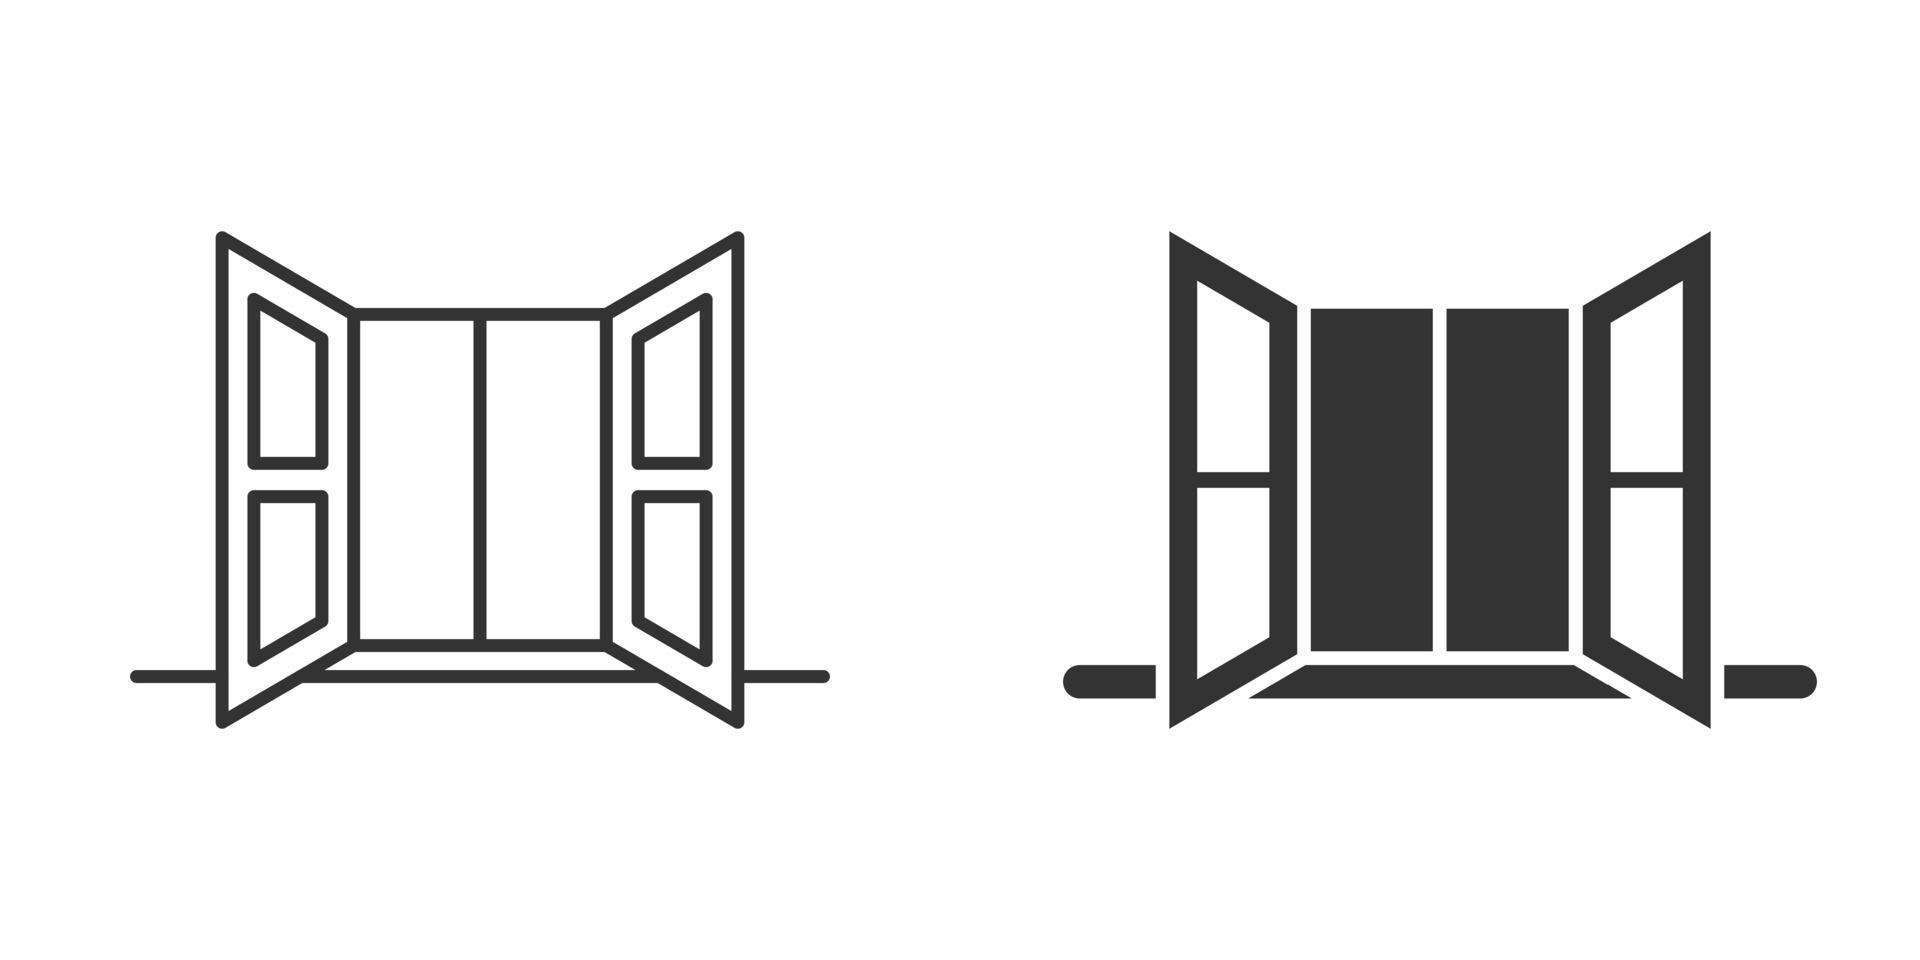 fönster ikon i platt stil. hölje vektor illustration på isolerat bakgrund. hus interiör tecken företag begrepp.